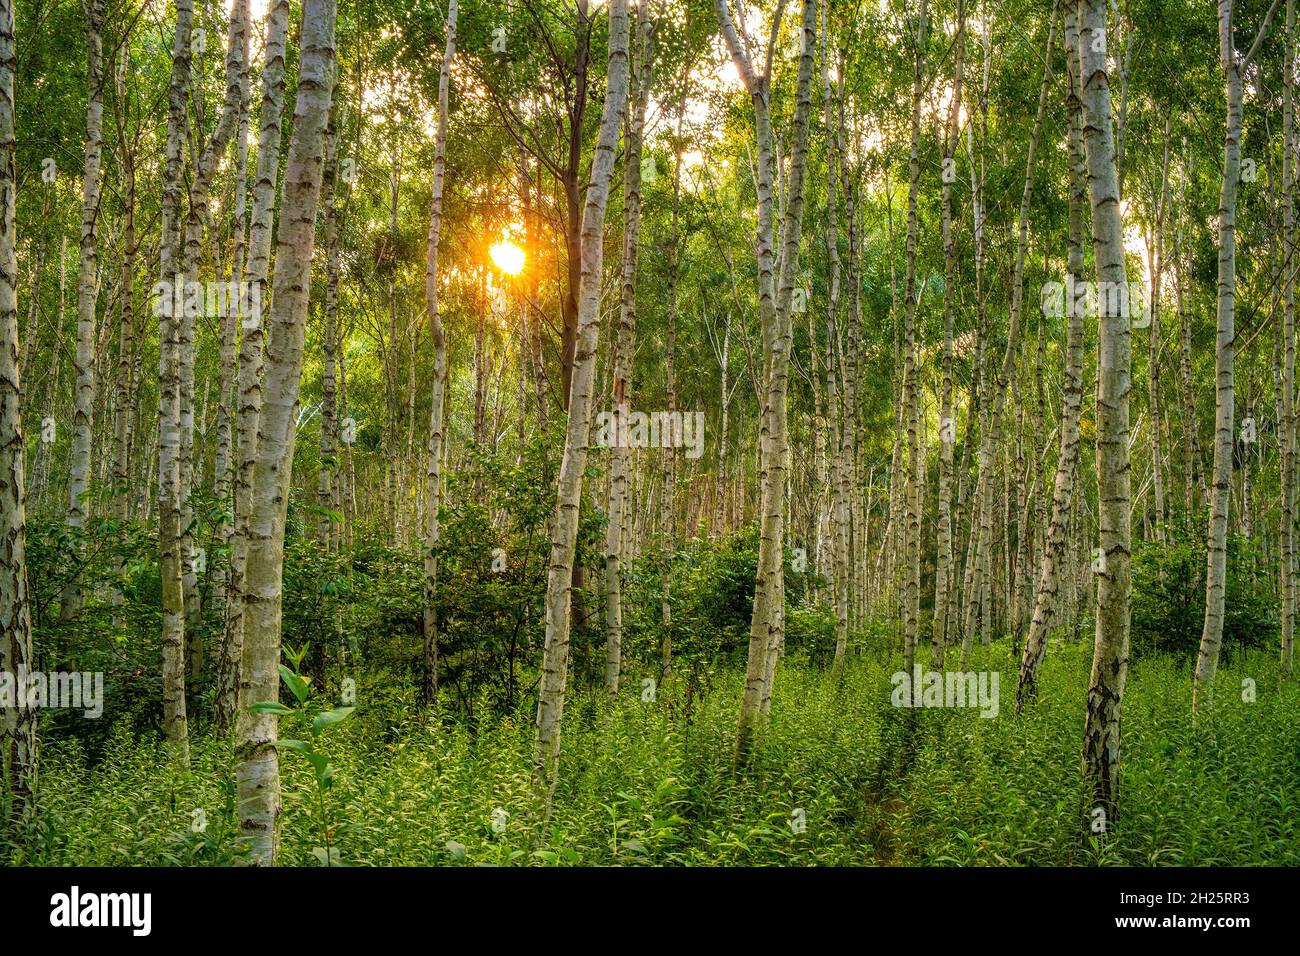 Paysage d'été de la forêt de jeunes bouleaux argentés - latin Betula pendula - dans la forêt de Las Kabacki à Varsovie, dans le centre de la Pologne Banque D'Images